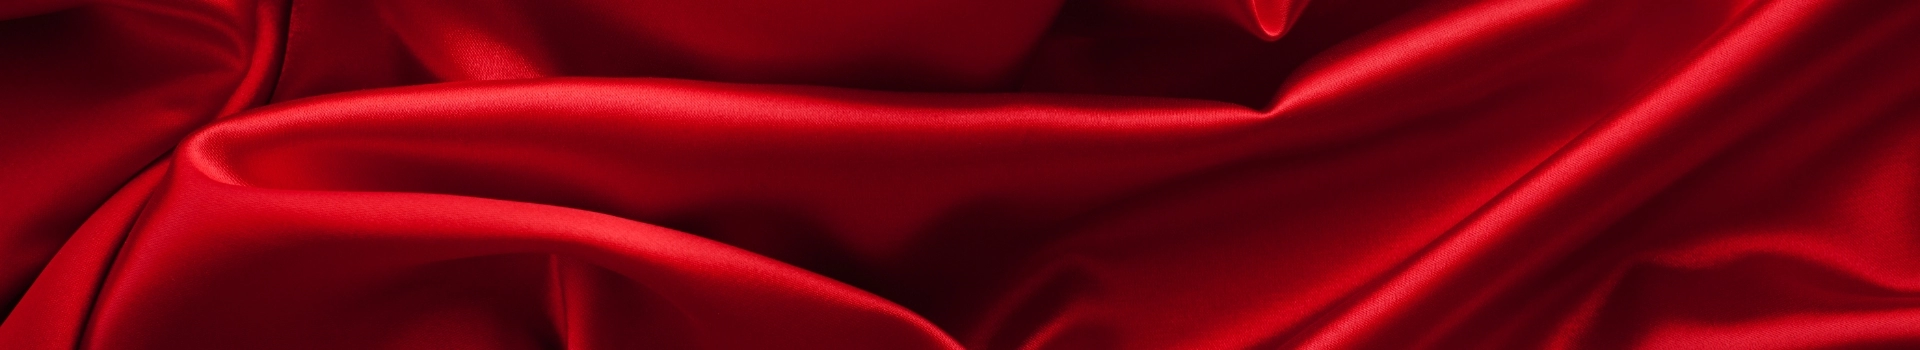 czerwony materiał